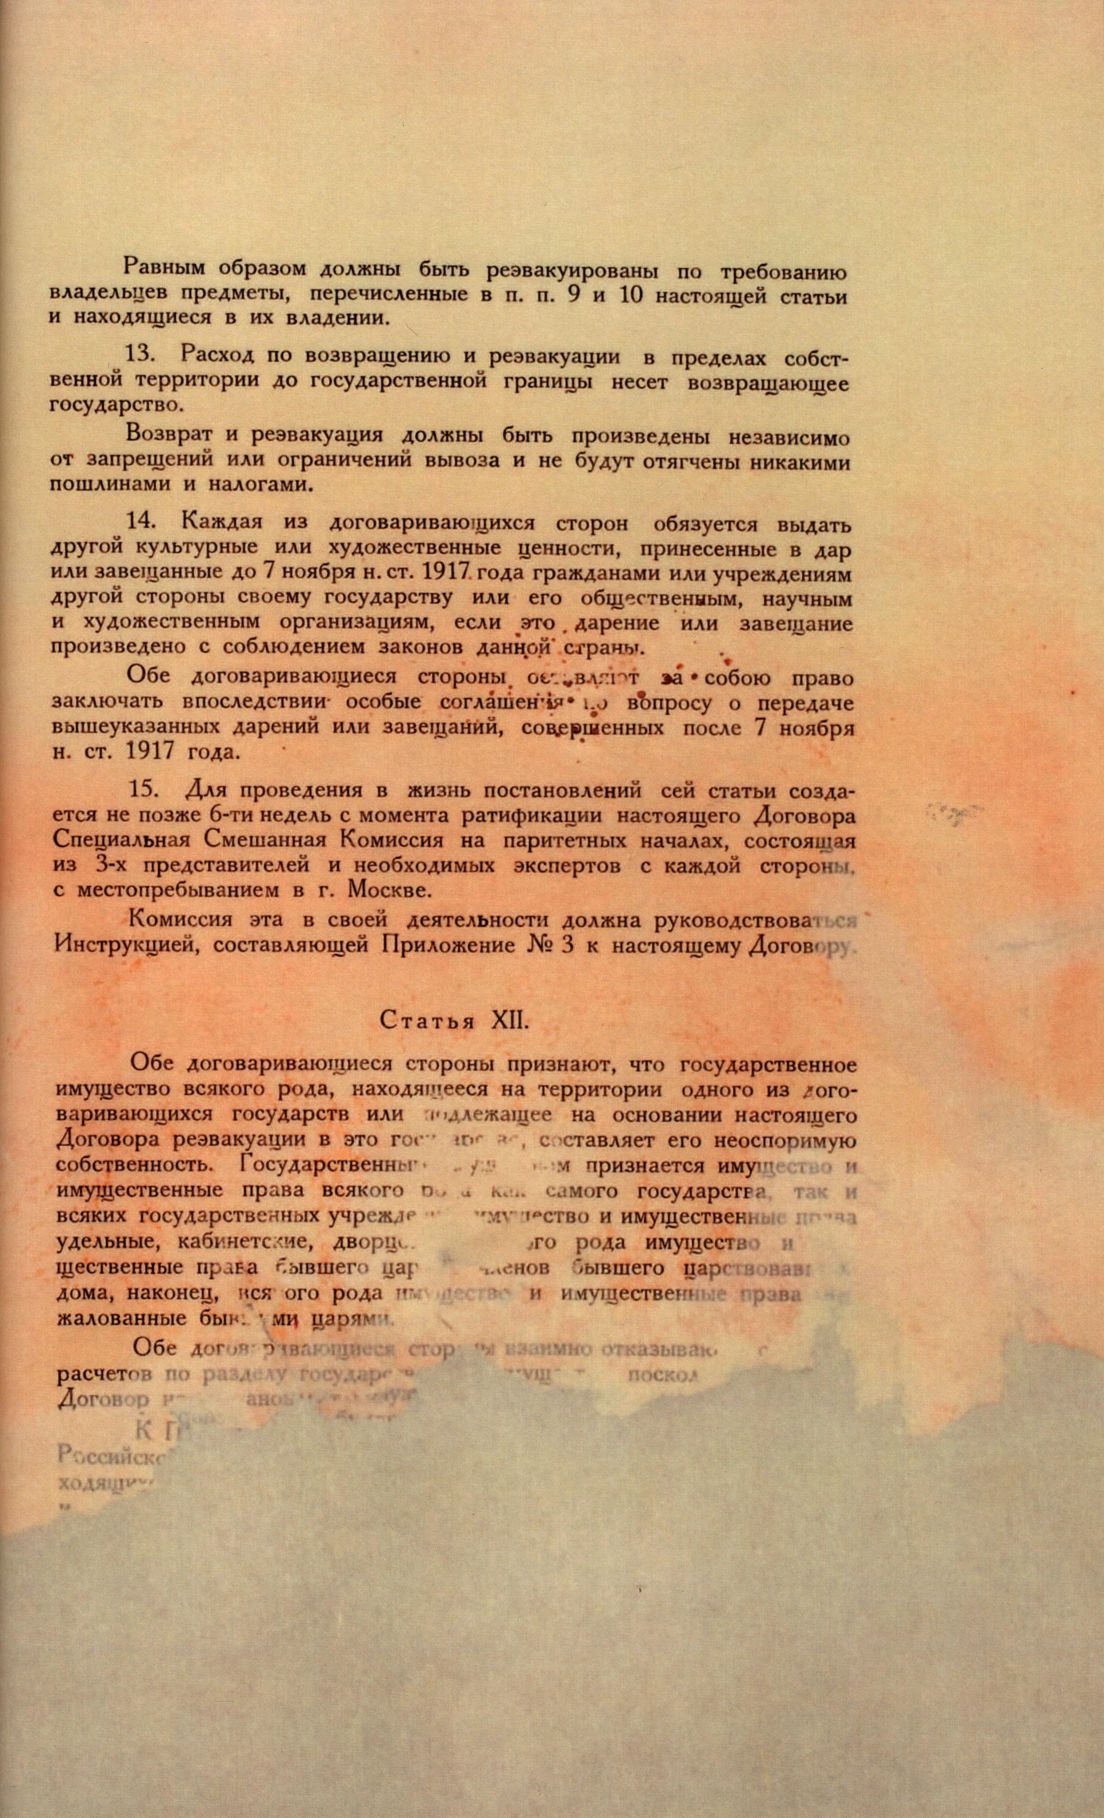 Traktat Pokoju między Polską a Rosją i Ukrainą podpisany w Rydze dnia 18 marca 1921 roku, s. 79, MSZ, sygn. 6739.